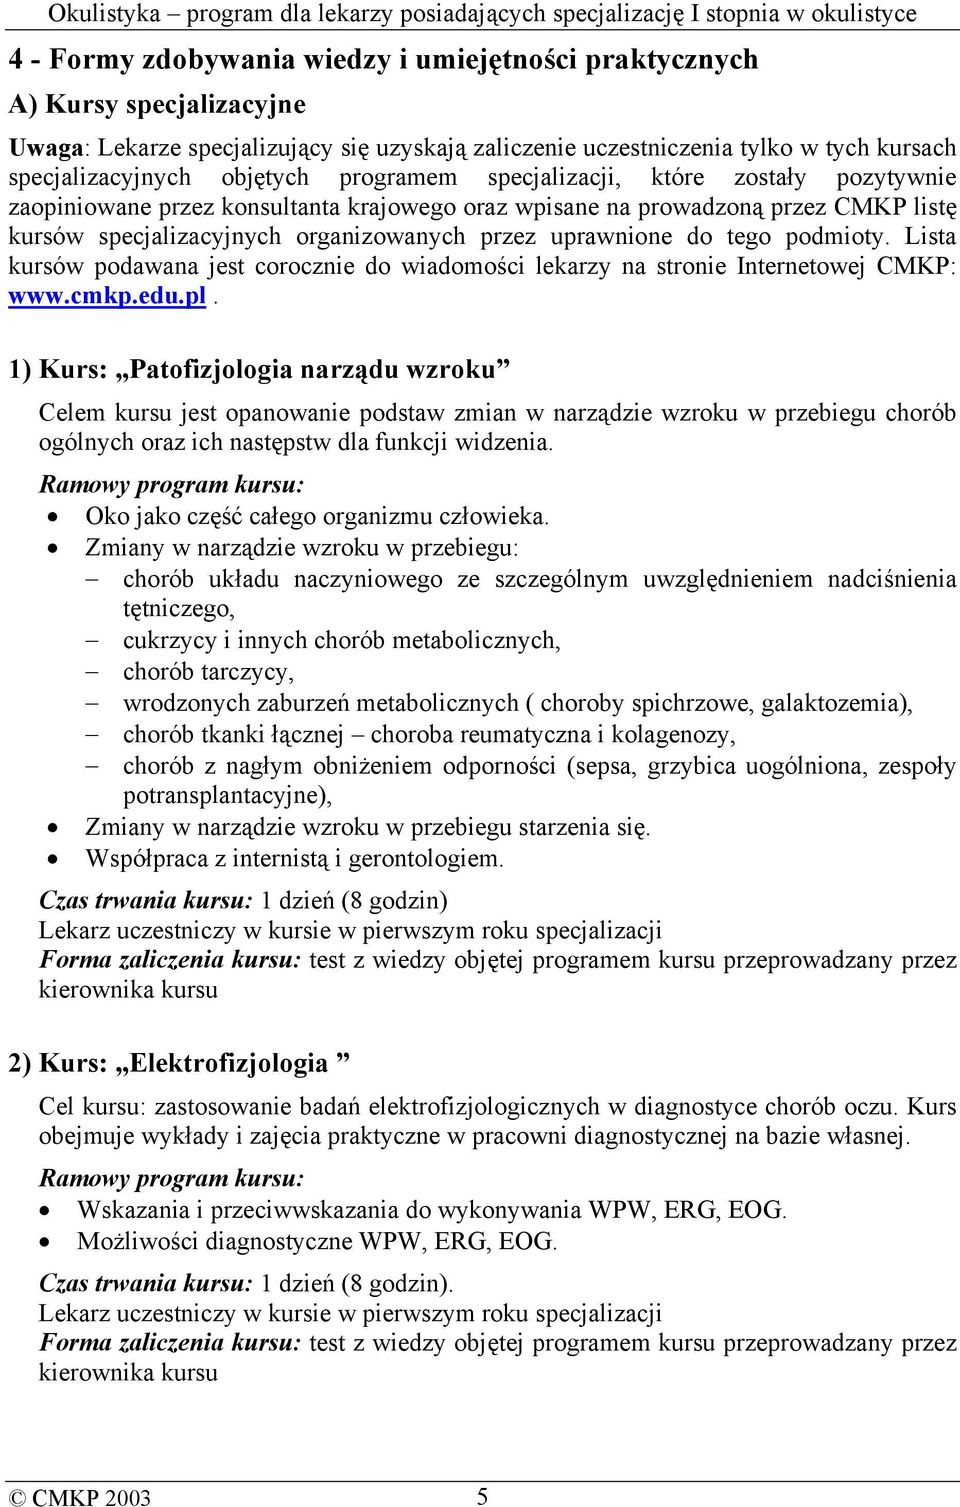 podmioty. Lista kursów podawana jest corocznie do wiadomości lekarzy na stronie Internetowej CMKP: www.cmkp.edu.pl.